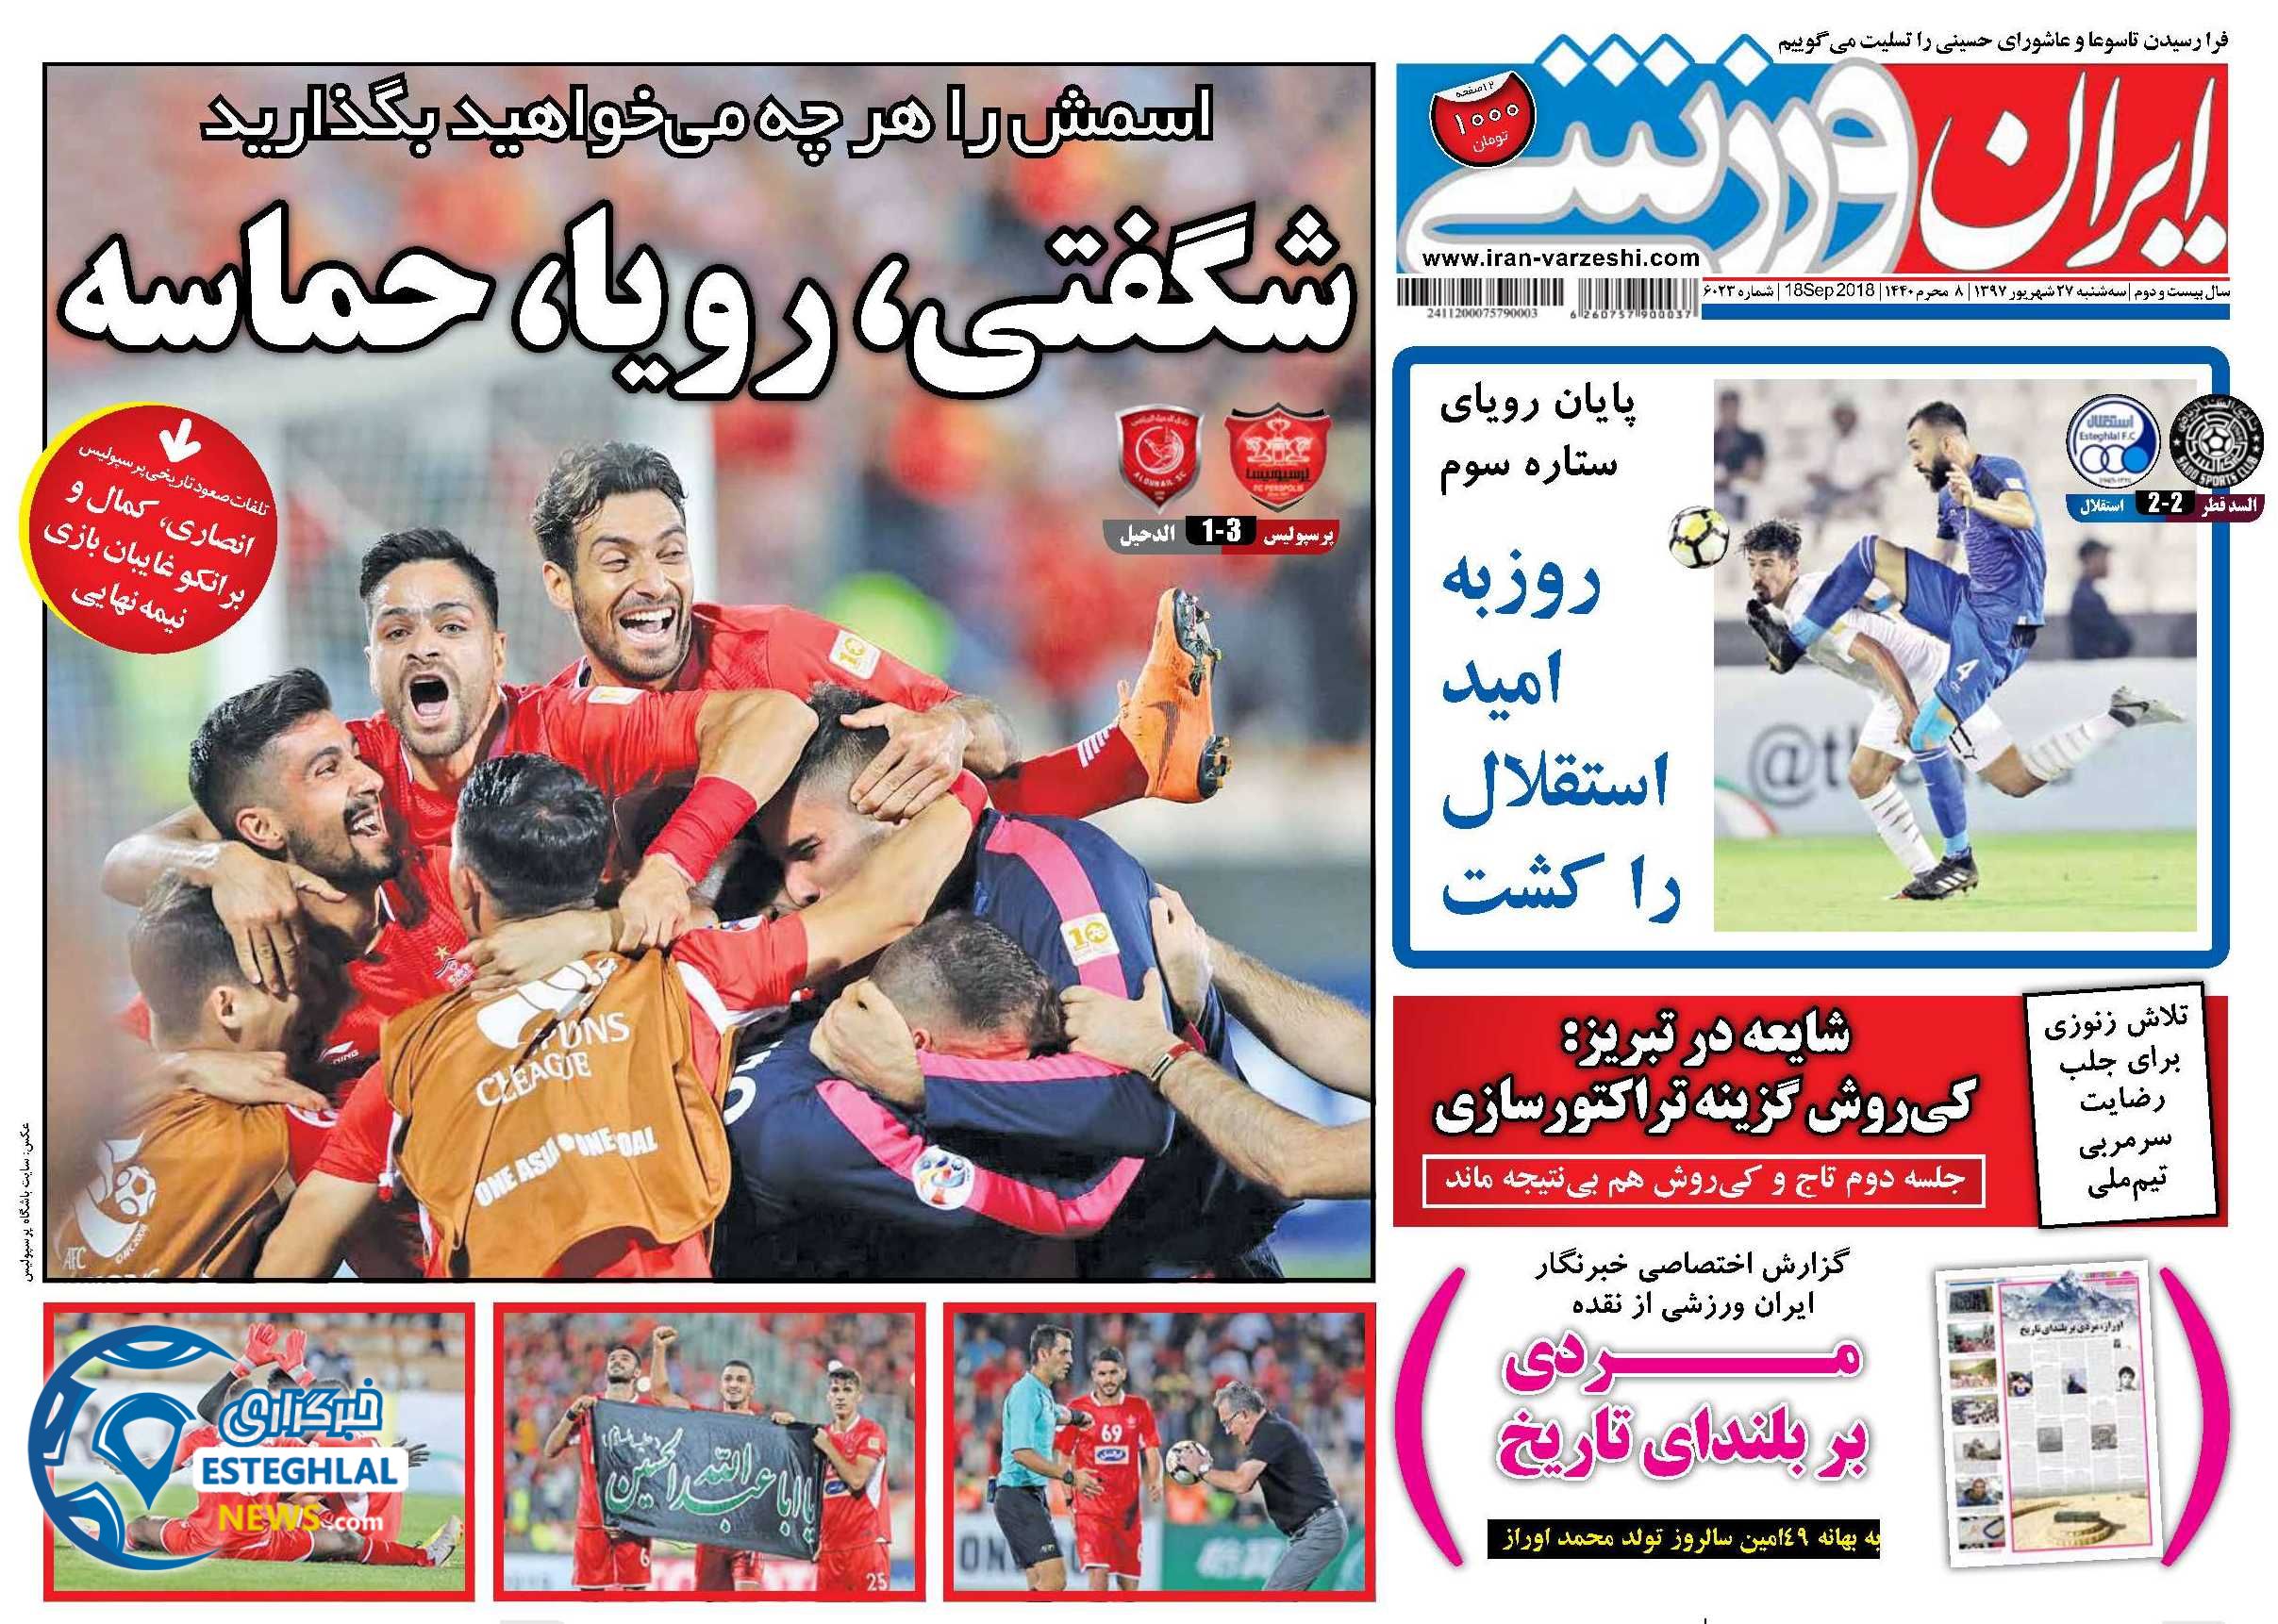 روزنامه ایران ورزشی سه شنبه 27 شهریور 1397       